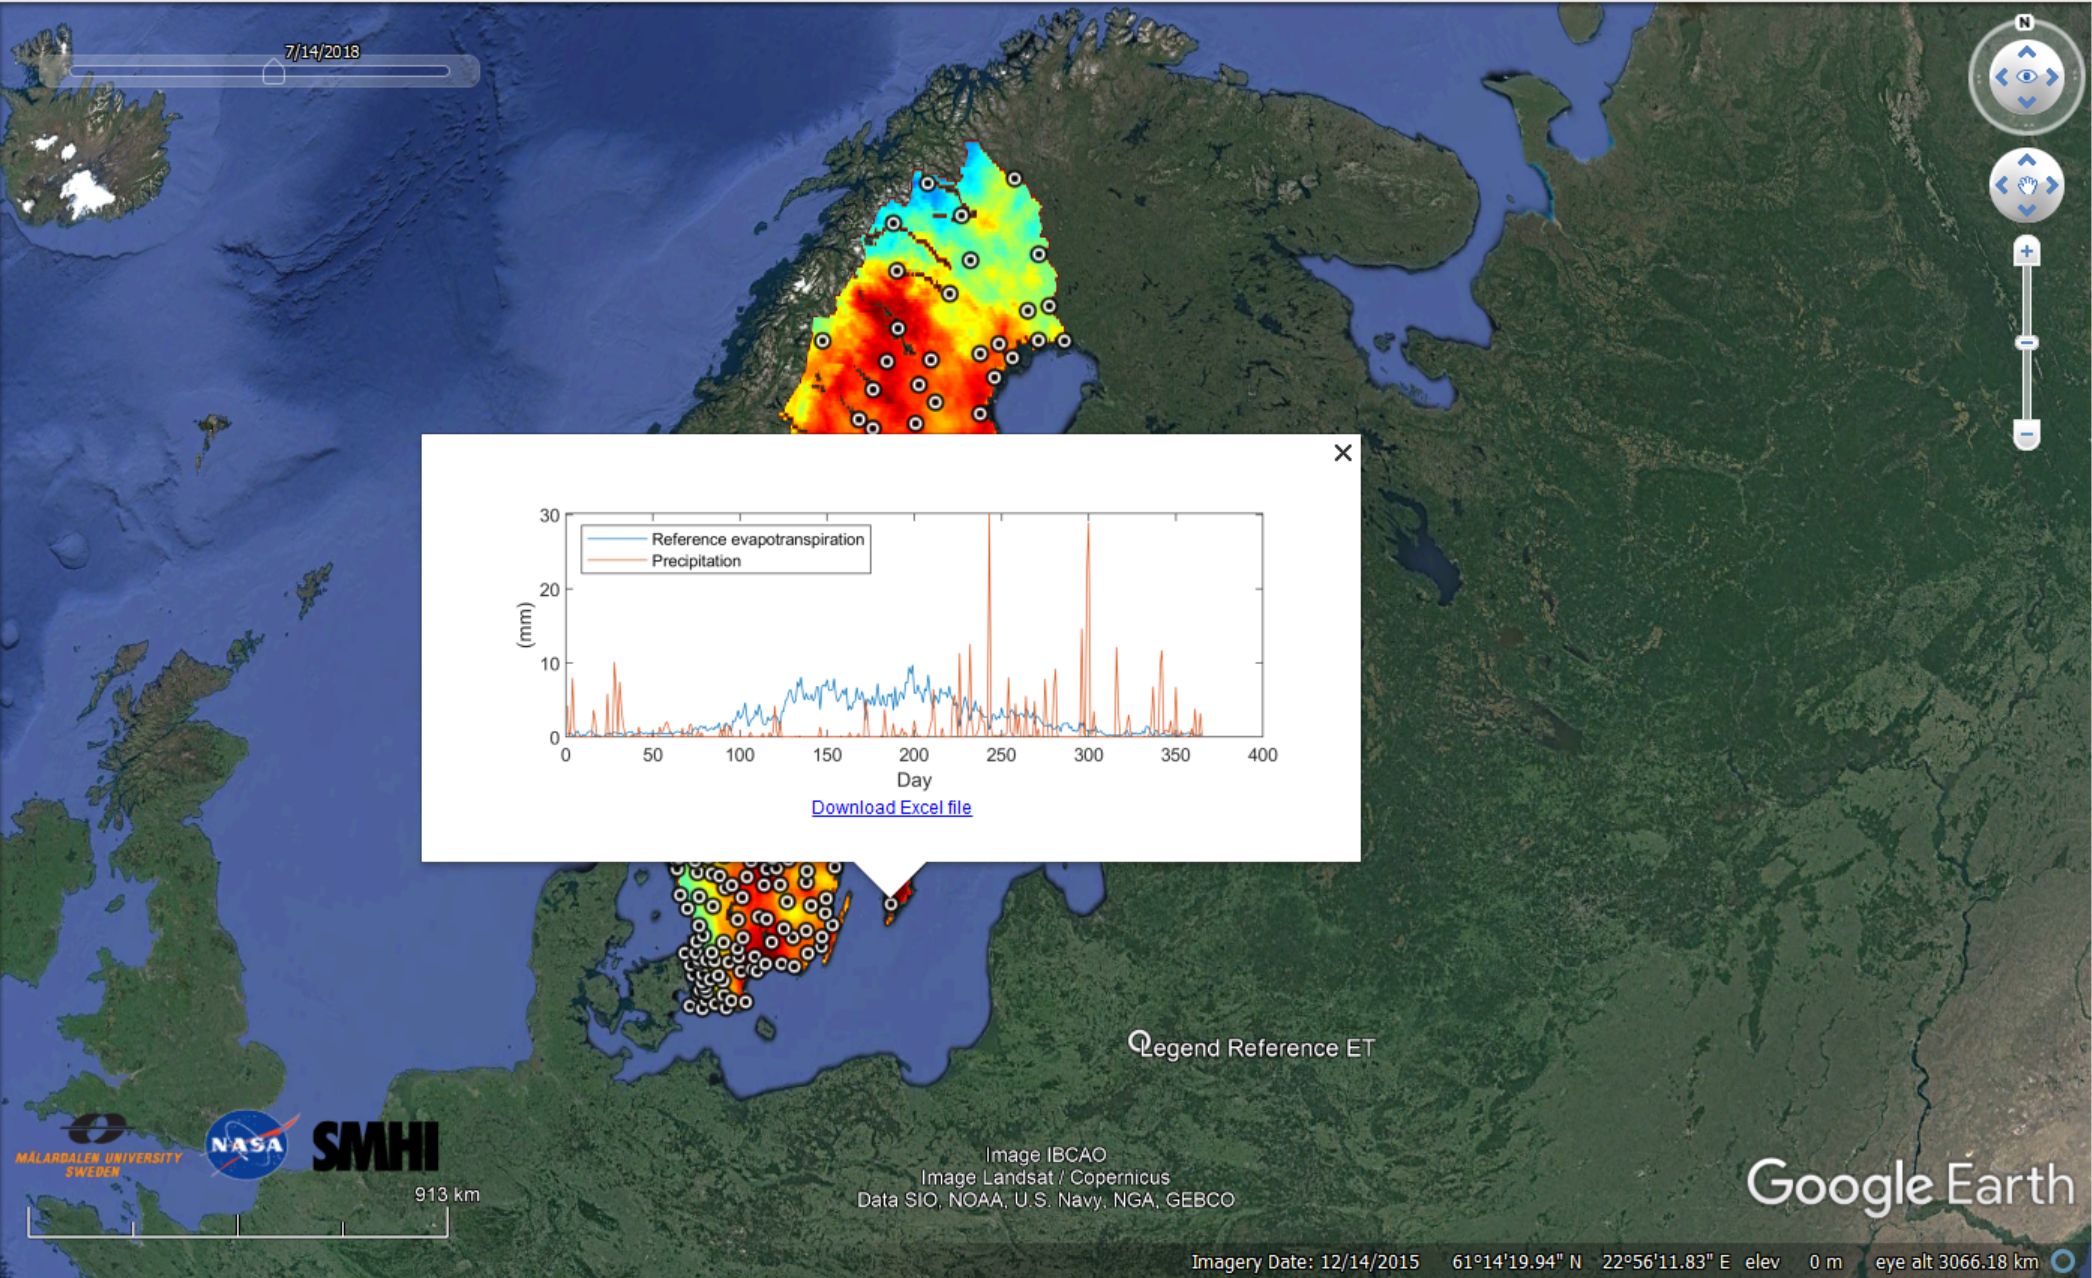 Bilden visar den genomsnittliga avdunstningen (blå kurva) i mm och nederbördsmönstret (orange kurva) i mm under varje dag för hela 2018 (från 1 januari – 31 december). Båda kurvorna hänvisar till en specifik mätplats belägen på södra Gotland.